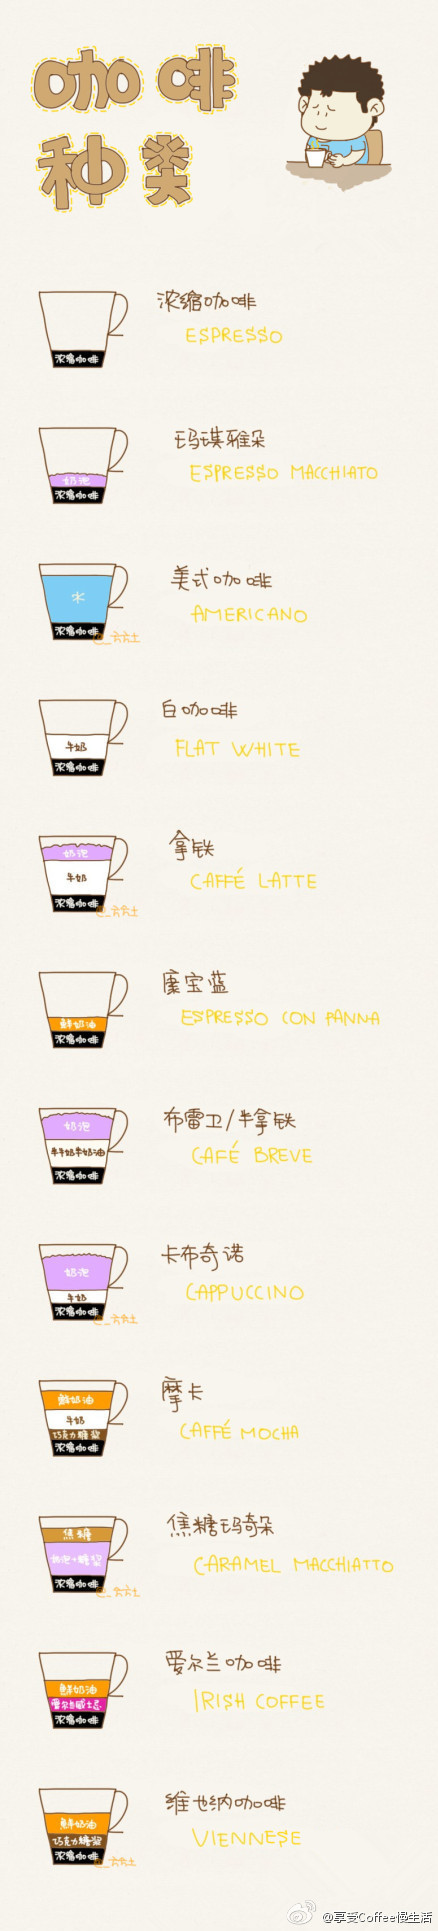 【手绘各式咖啡】几款常见咖啡制作配比一目了然呀~果断mark吧